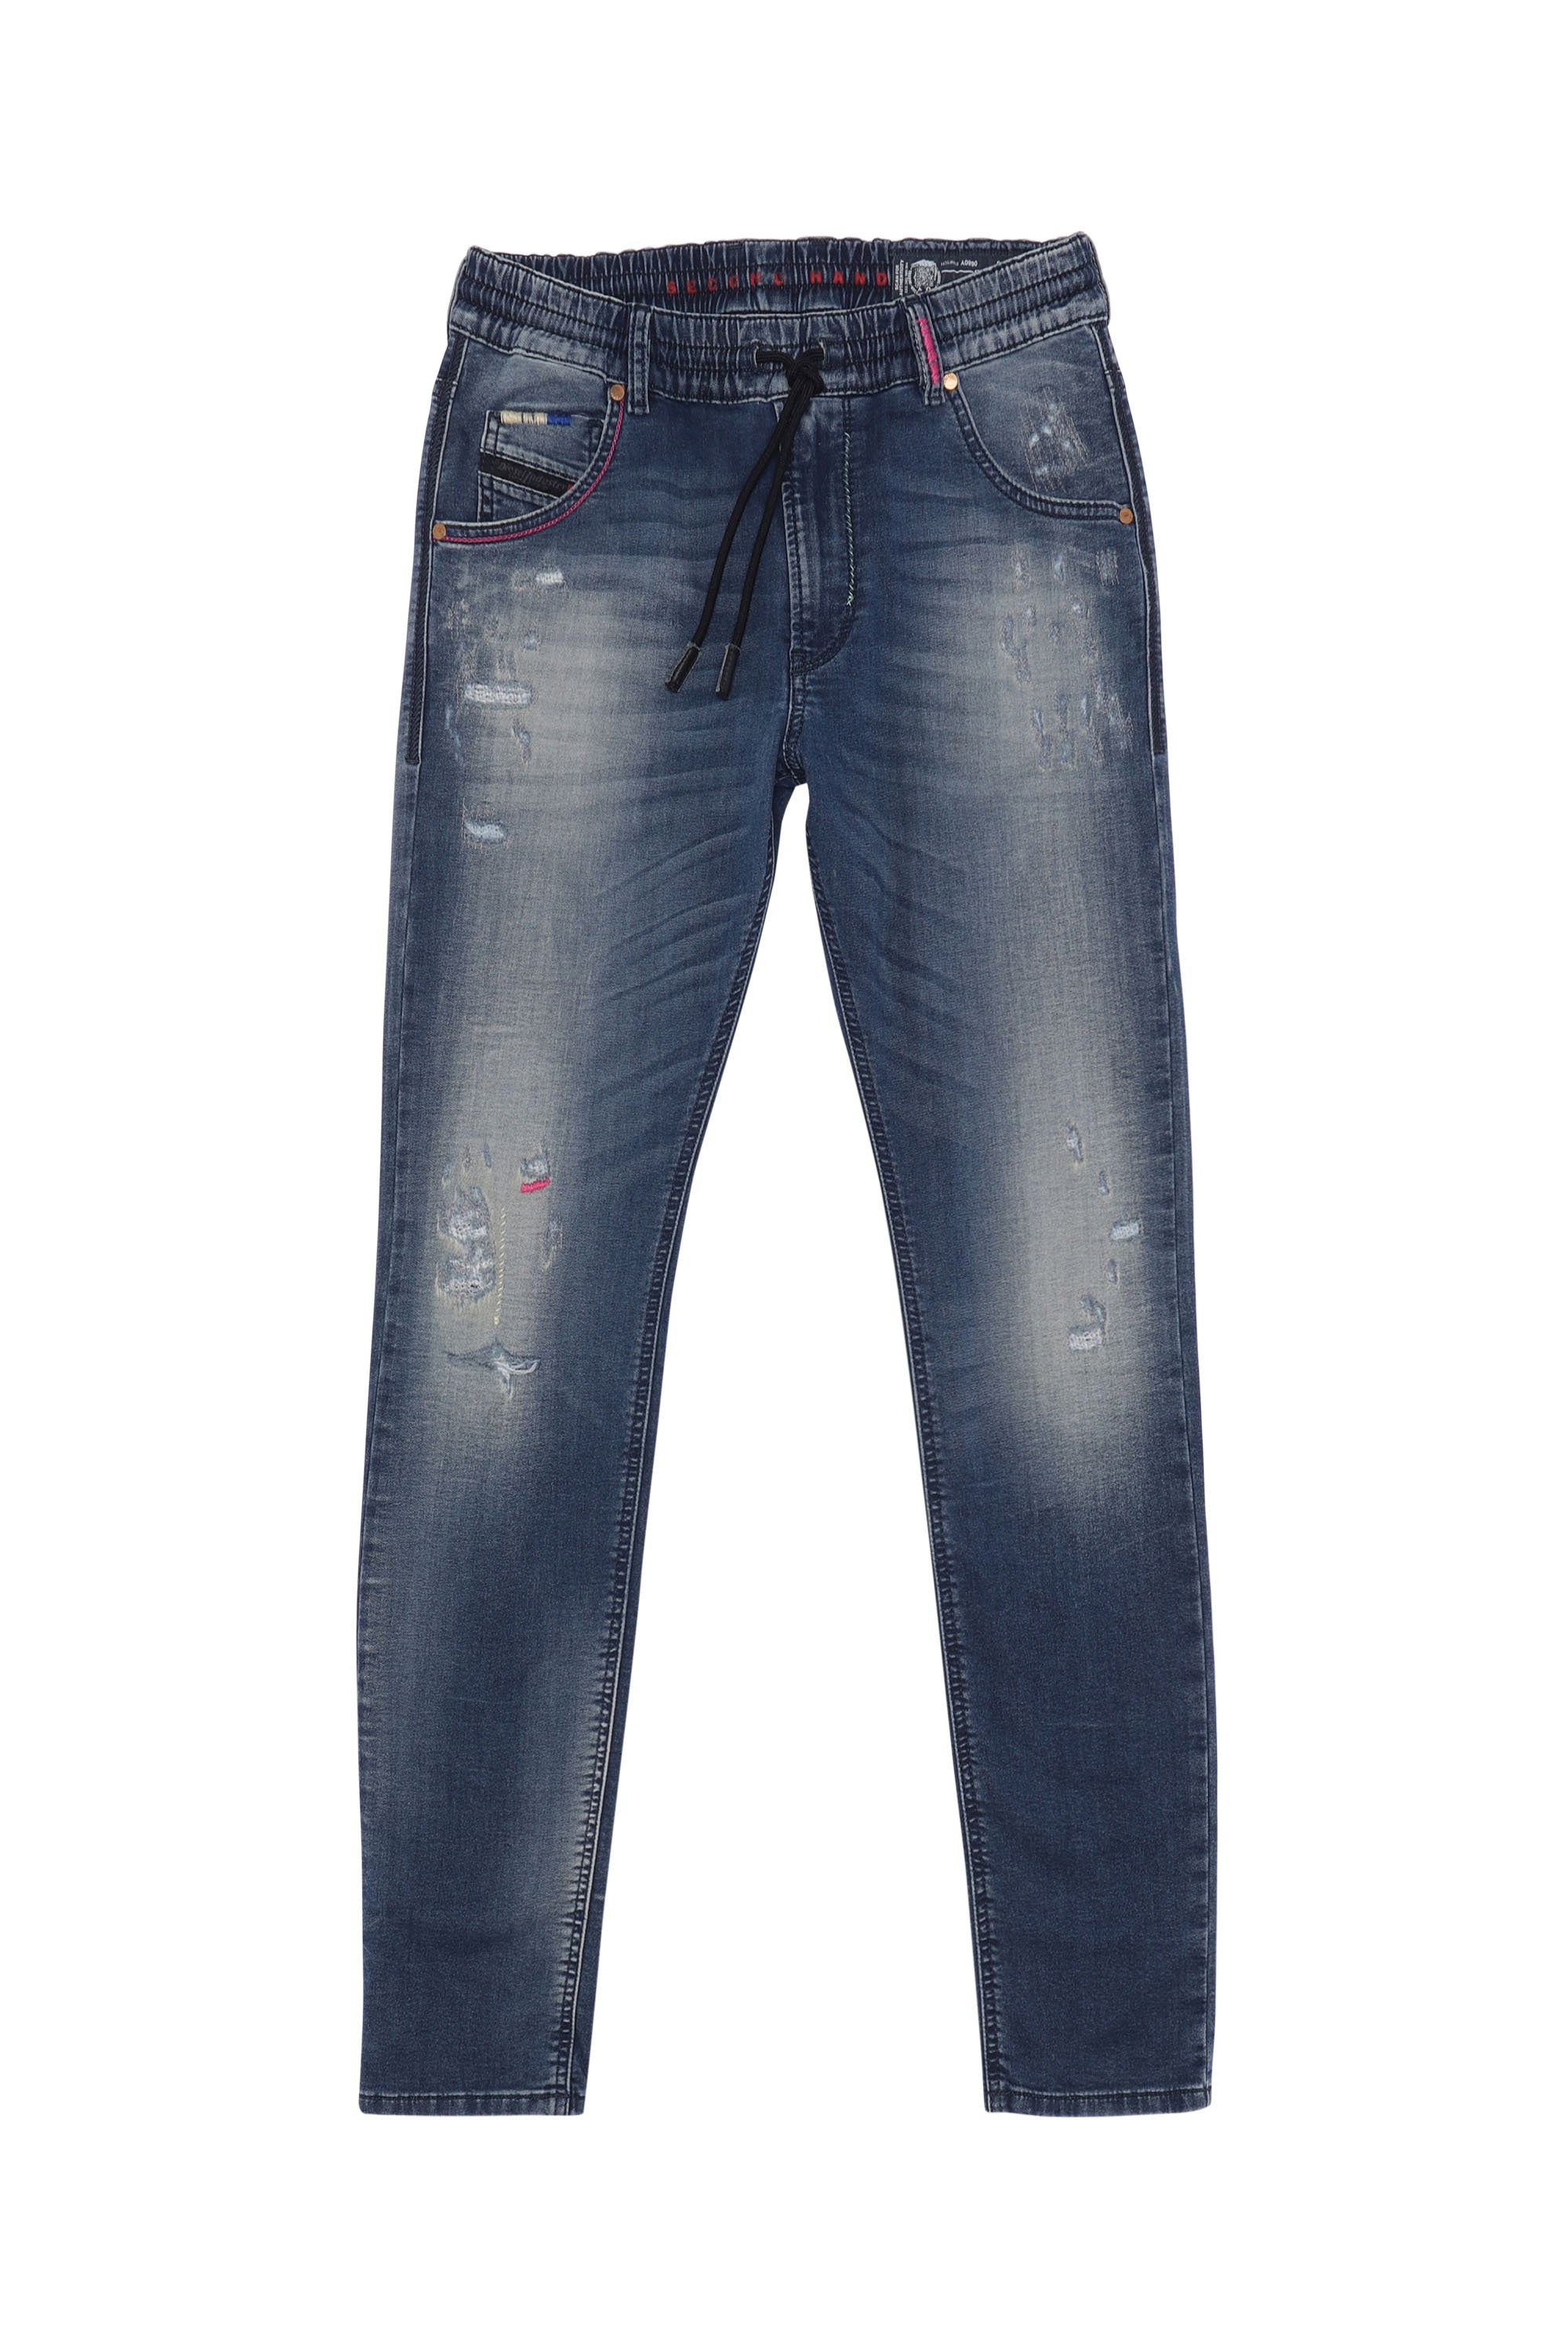 KRAILEY JoggJeans®, Dunkelblau - Jeans